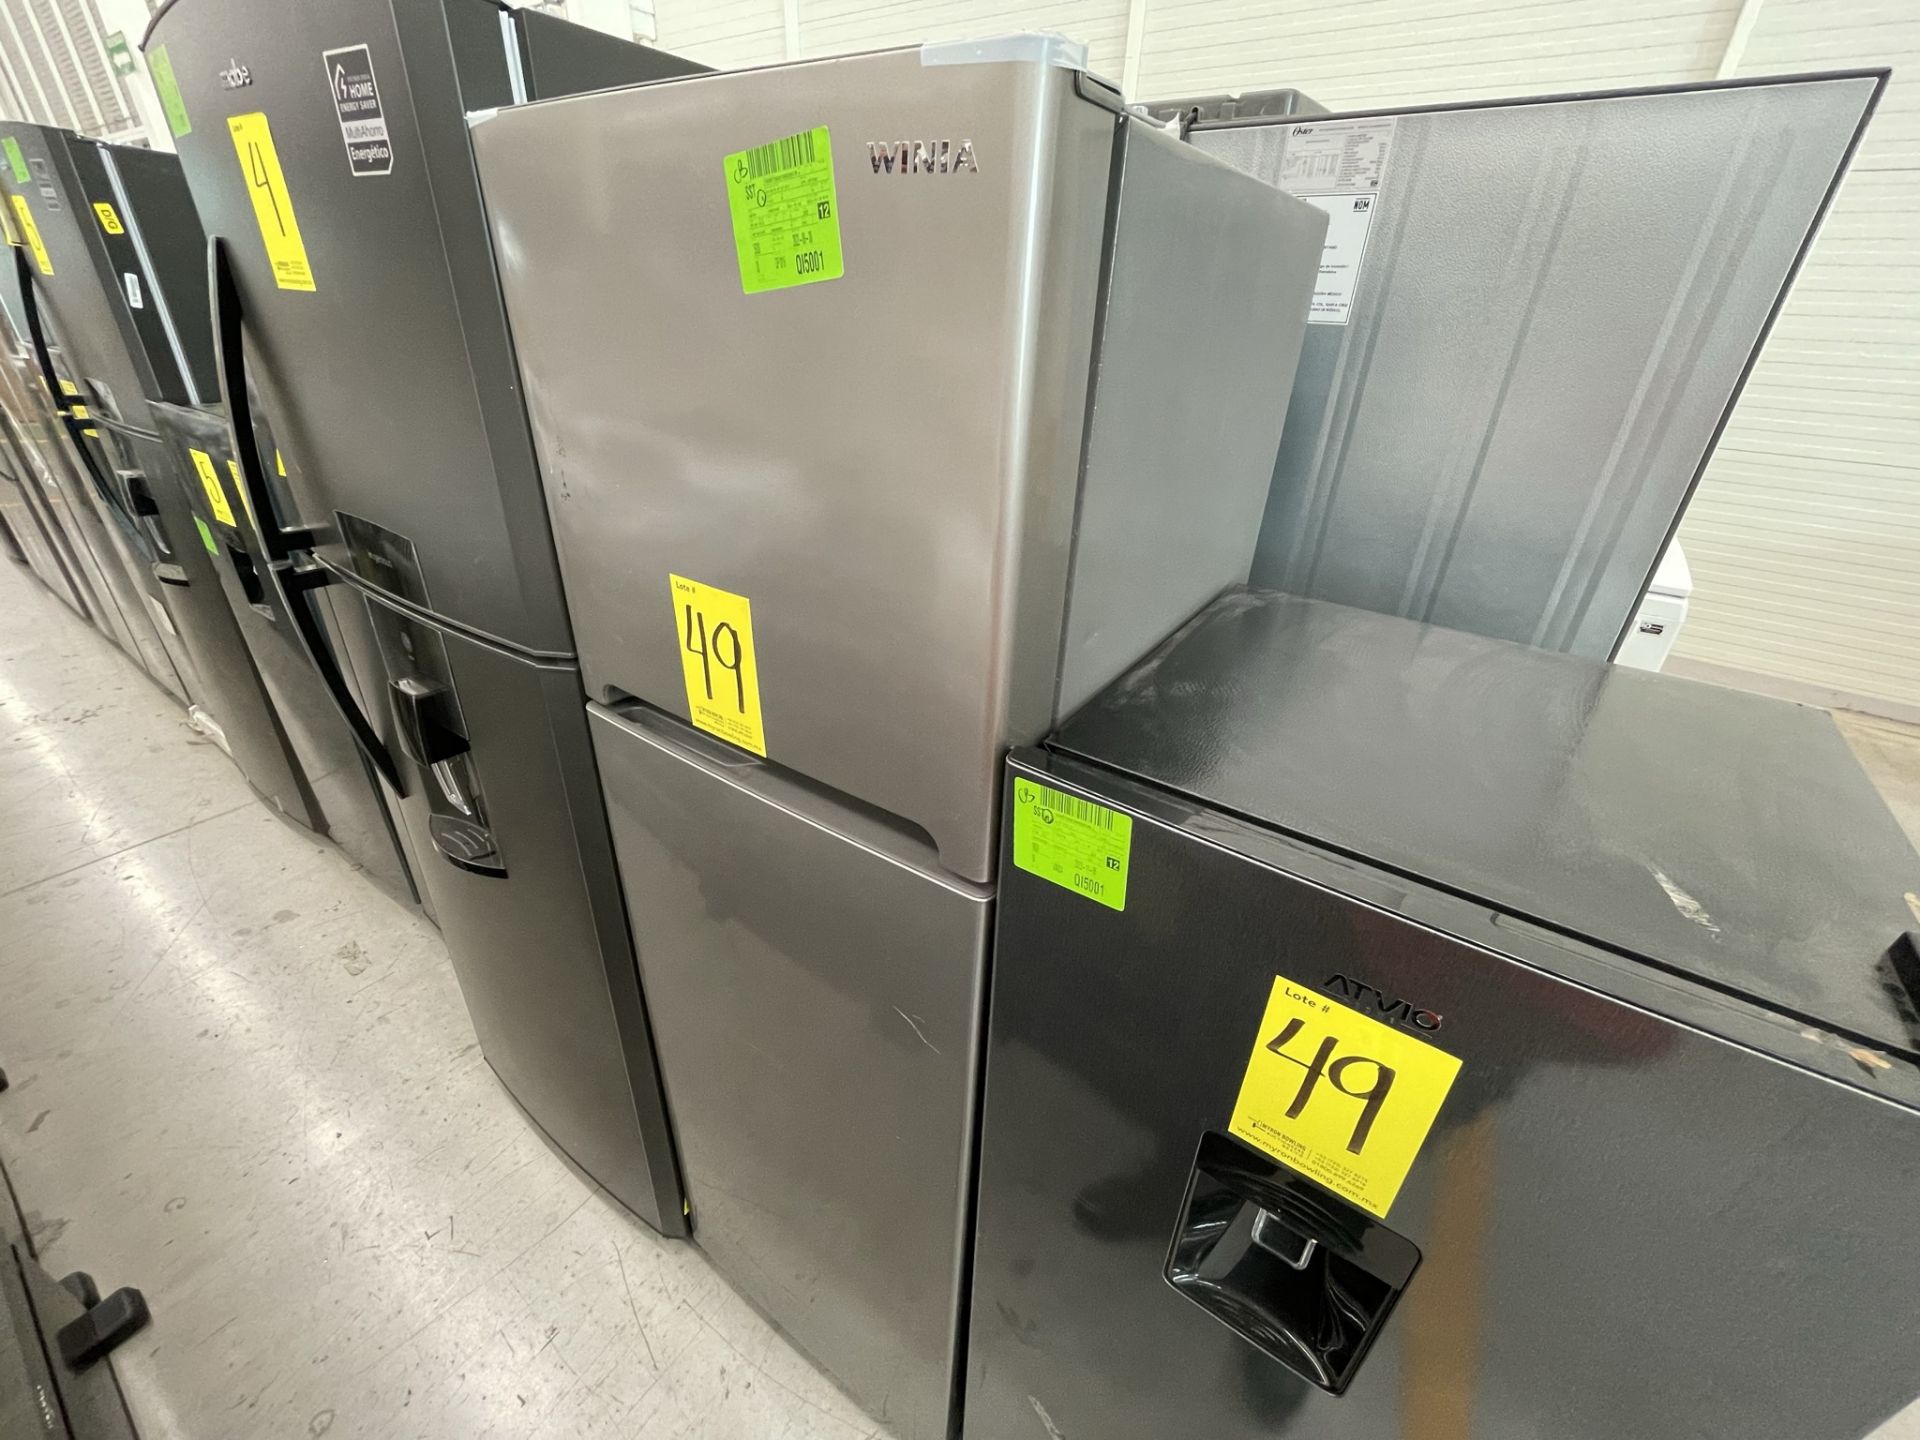 Lote de 2 Refrigeradores contiene: 1 Refrigerador Marca WINIA, Modelo DRF25210GN, Serie 370028, Col - Image 5 of 28